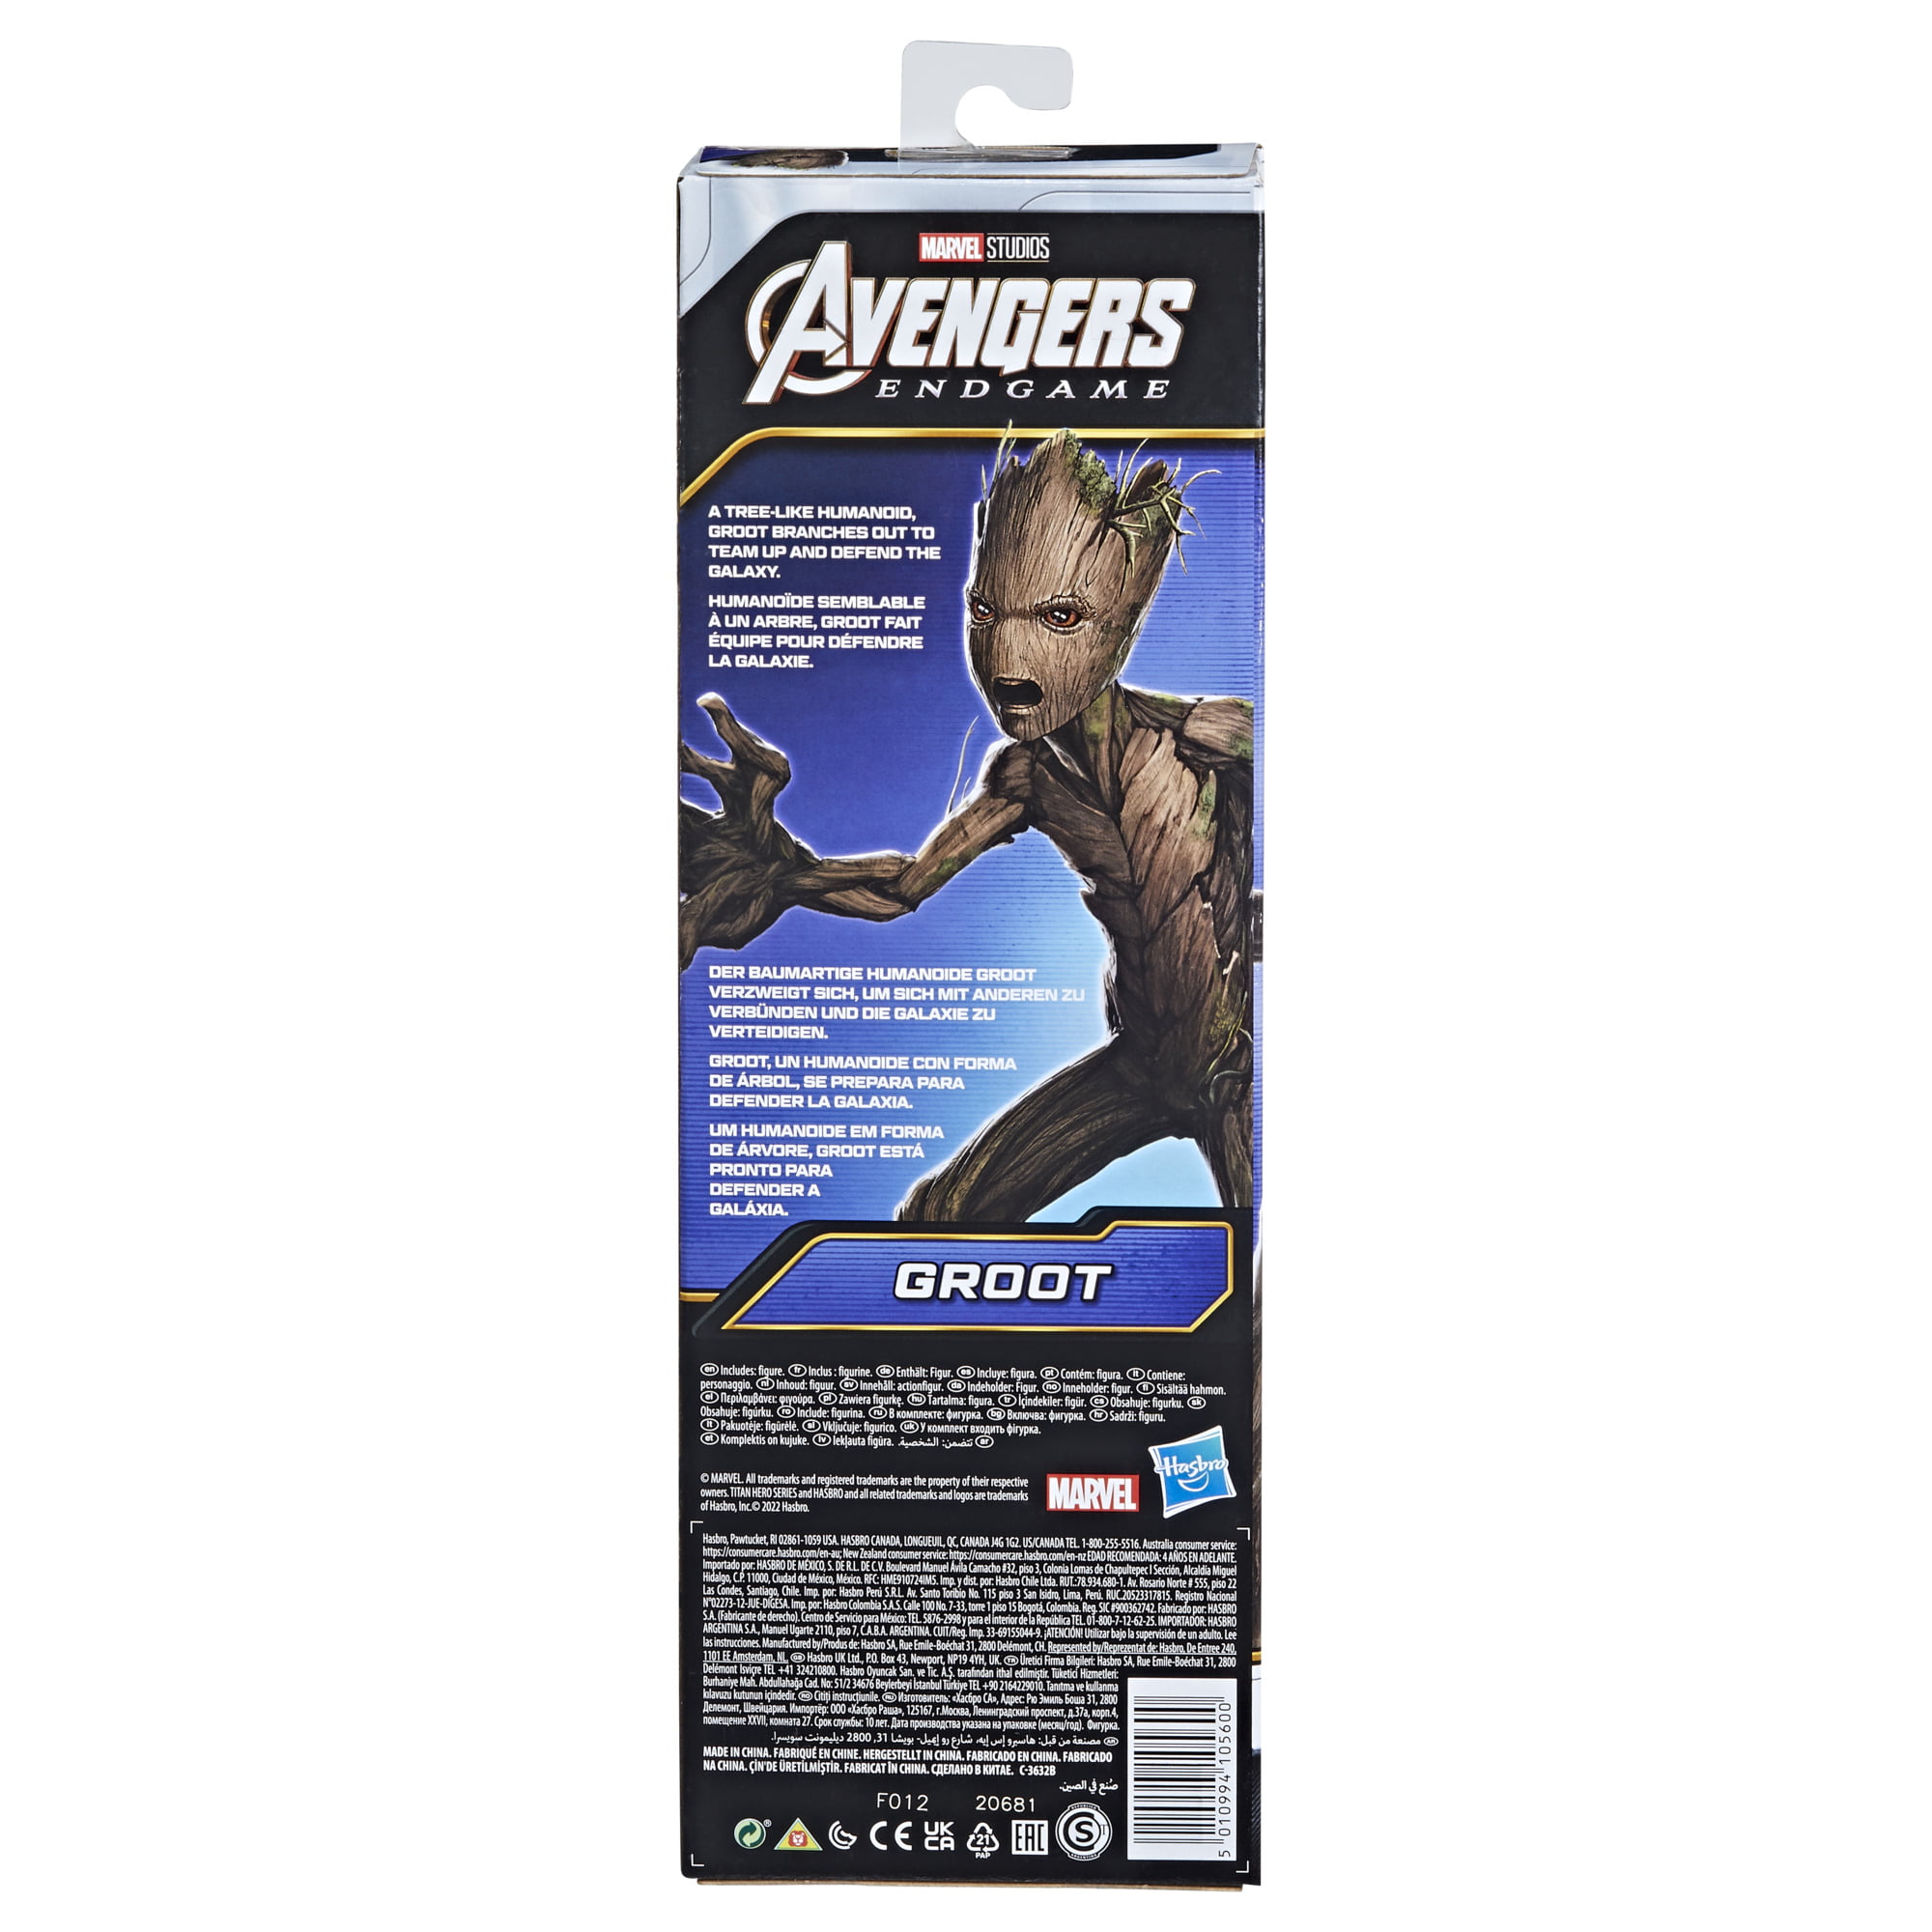 Marvel Avengers Titan Hero Series Groot Toy, Avengers: Endgame Action Figure  